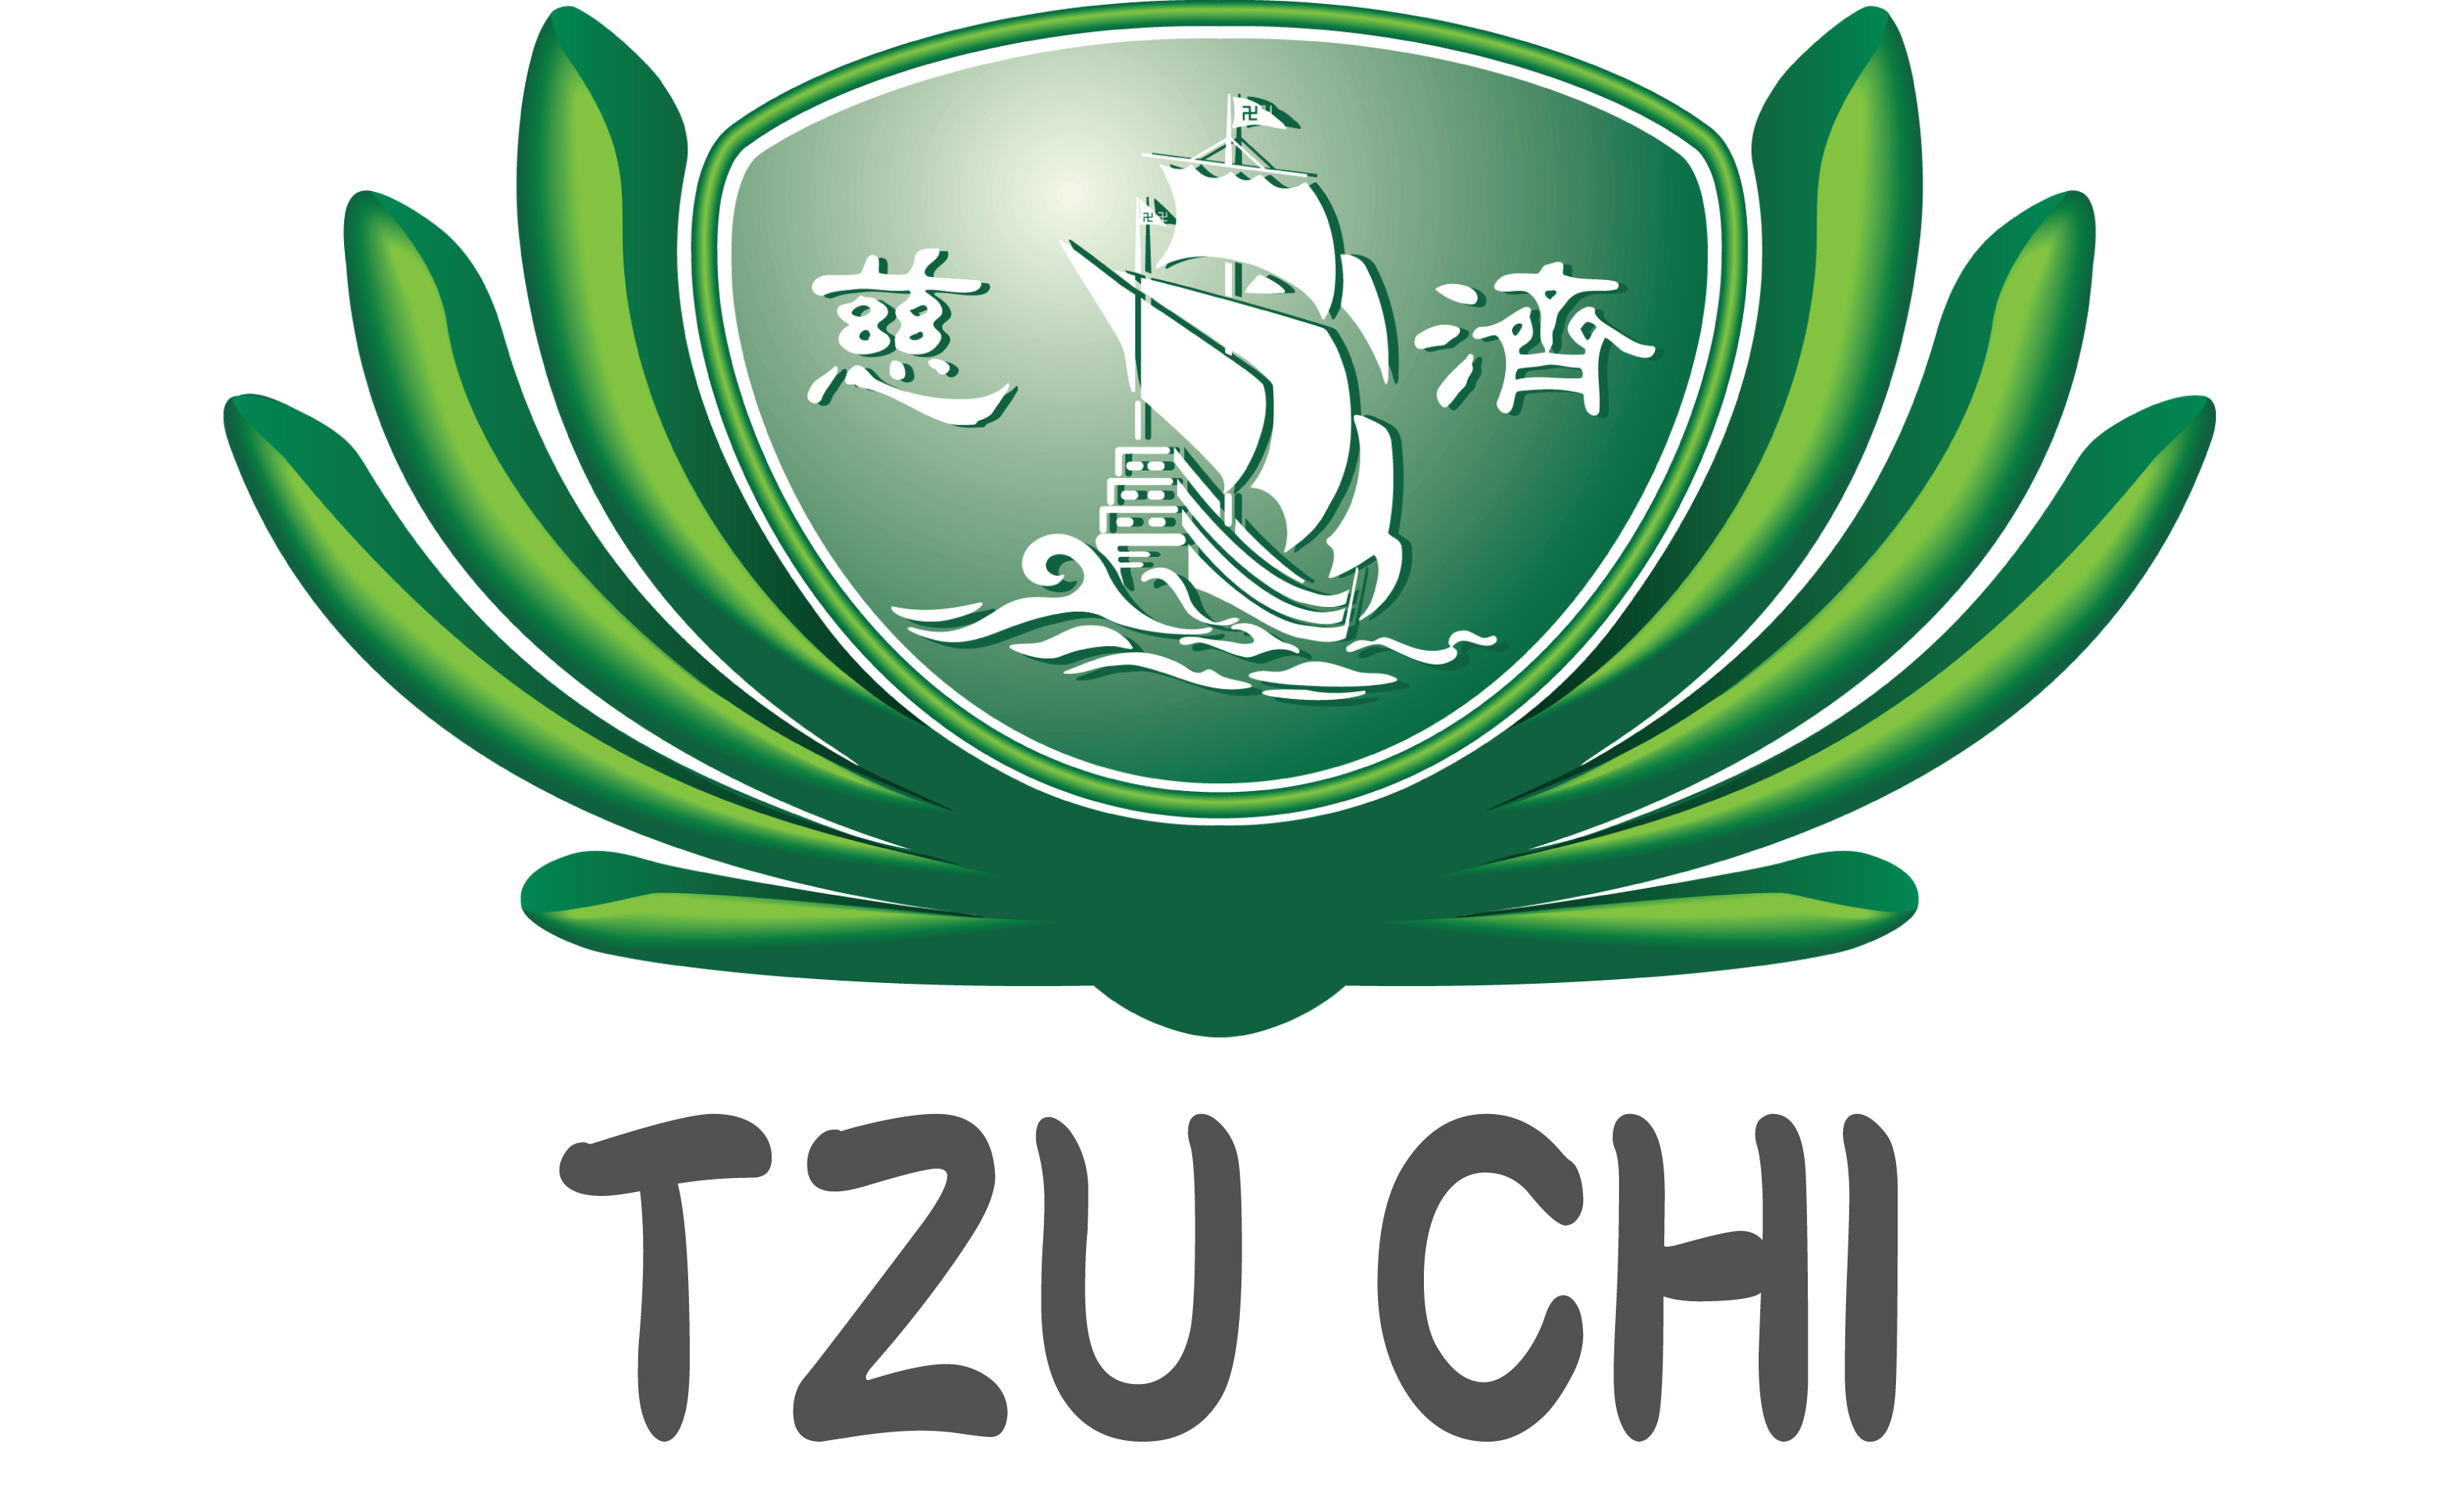 Tzu chi donation